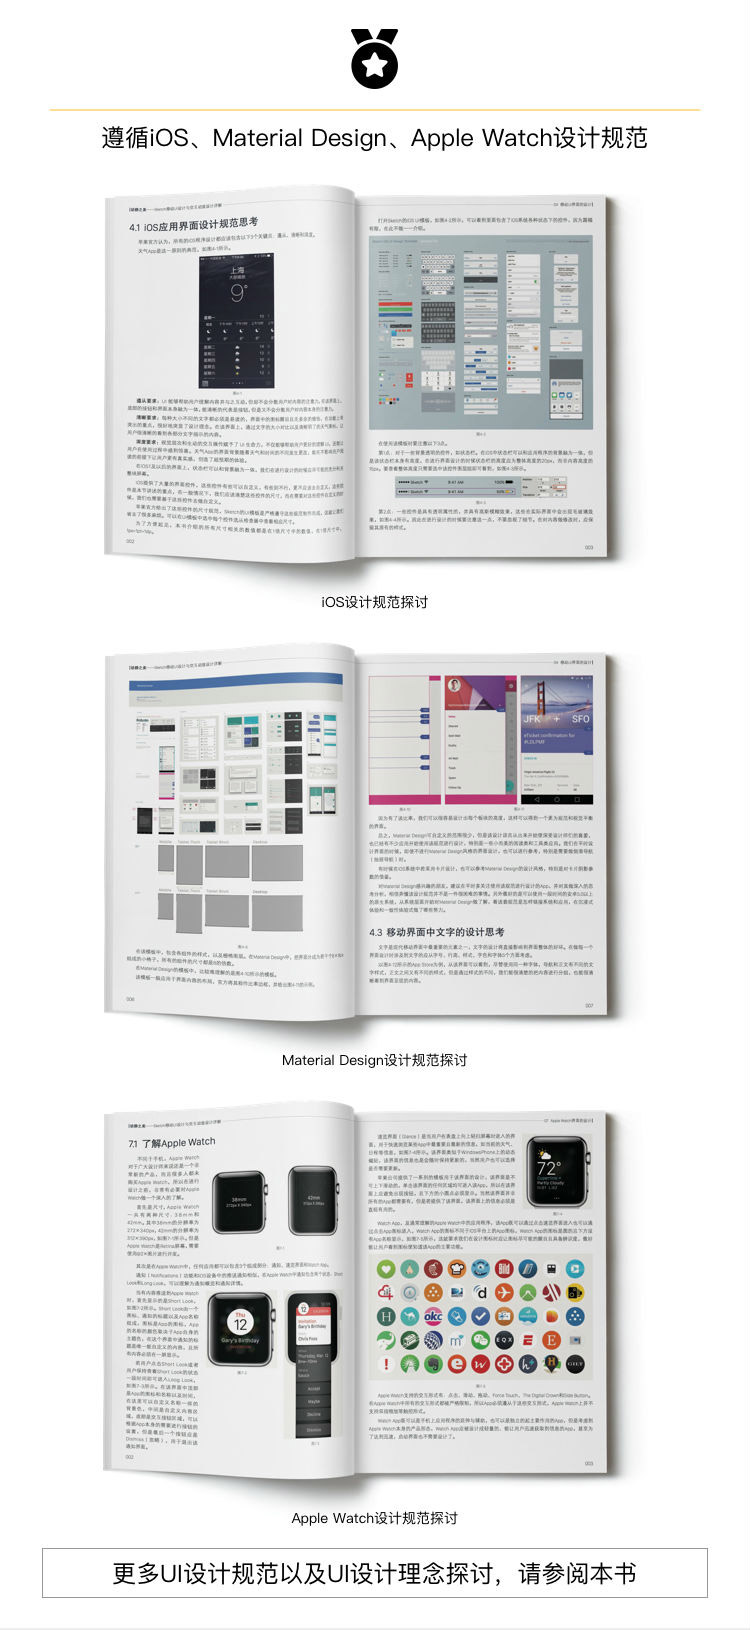 动静之美：Sketch移动UI与交互动效设计详解_100本优质平面设计书籍推荐,尽在平面设计学习日记网(www.xxriji.cn)